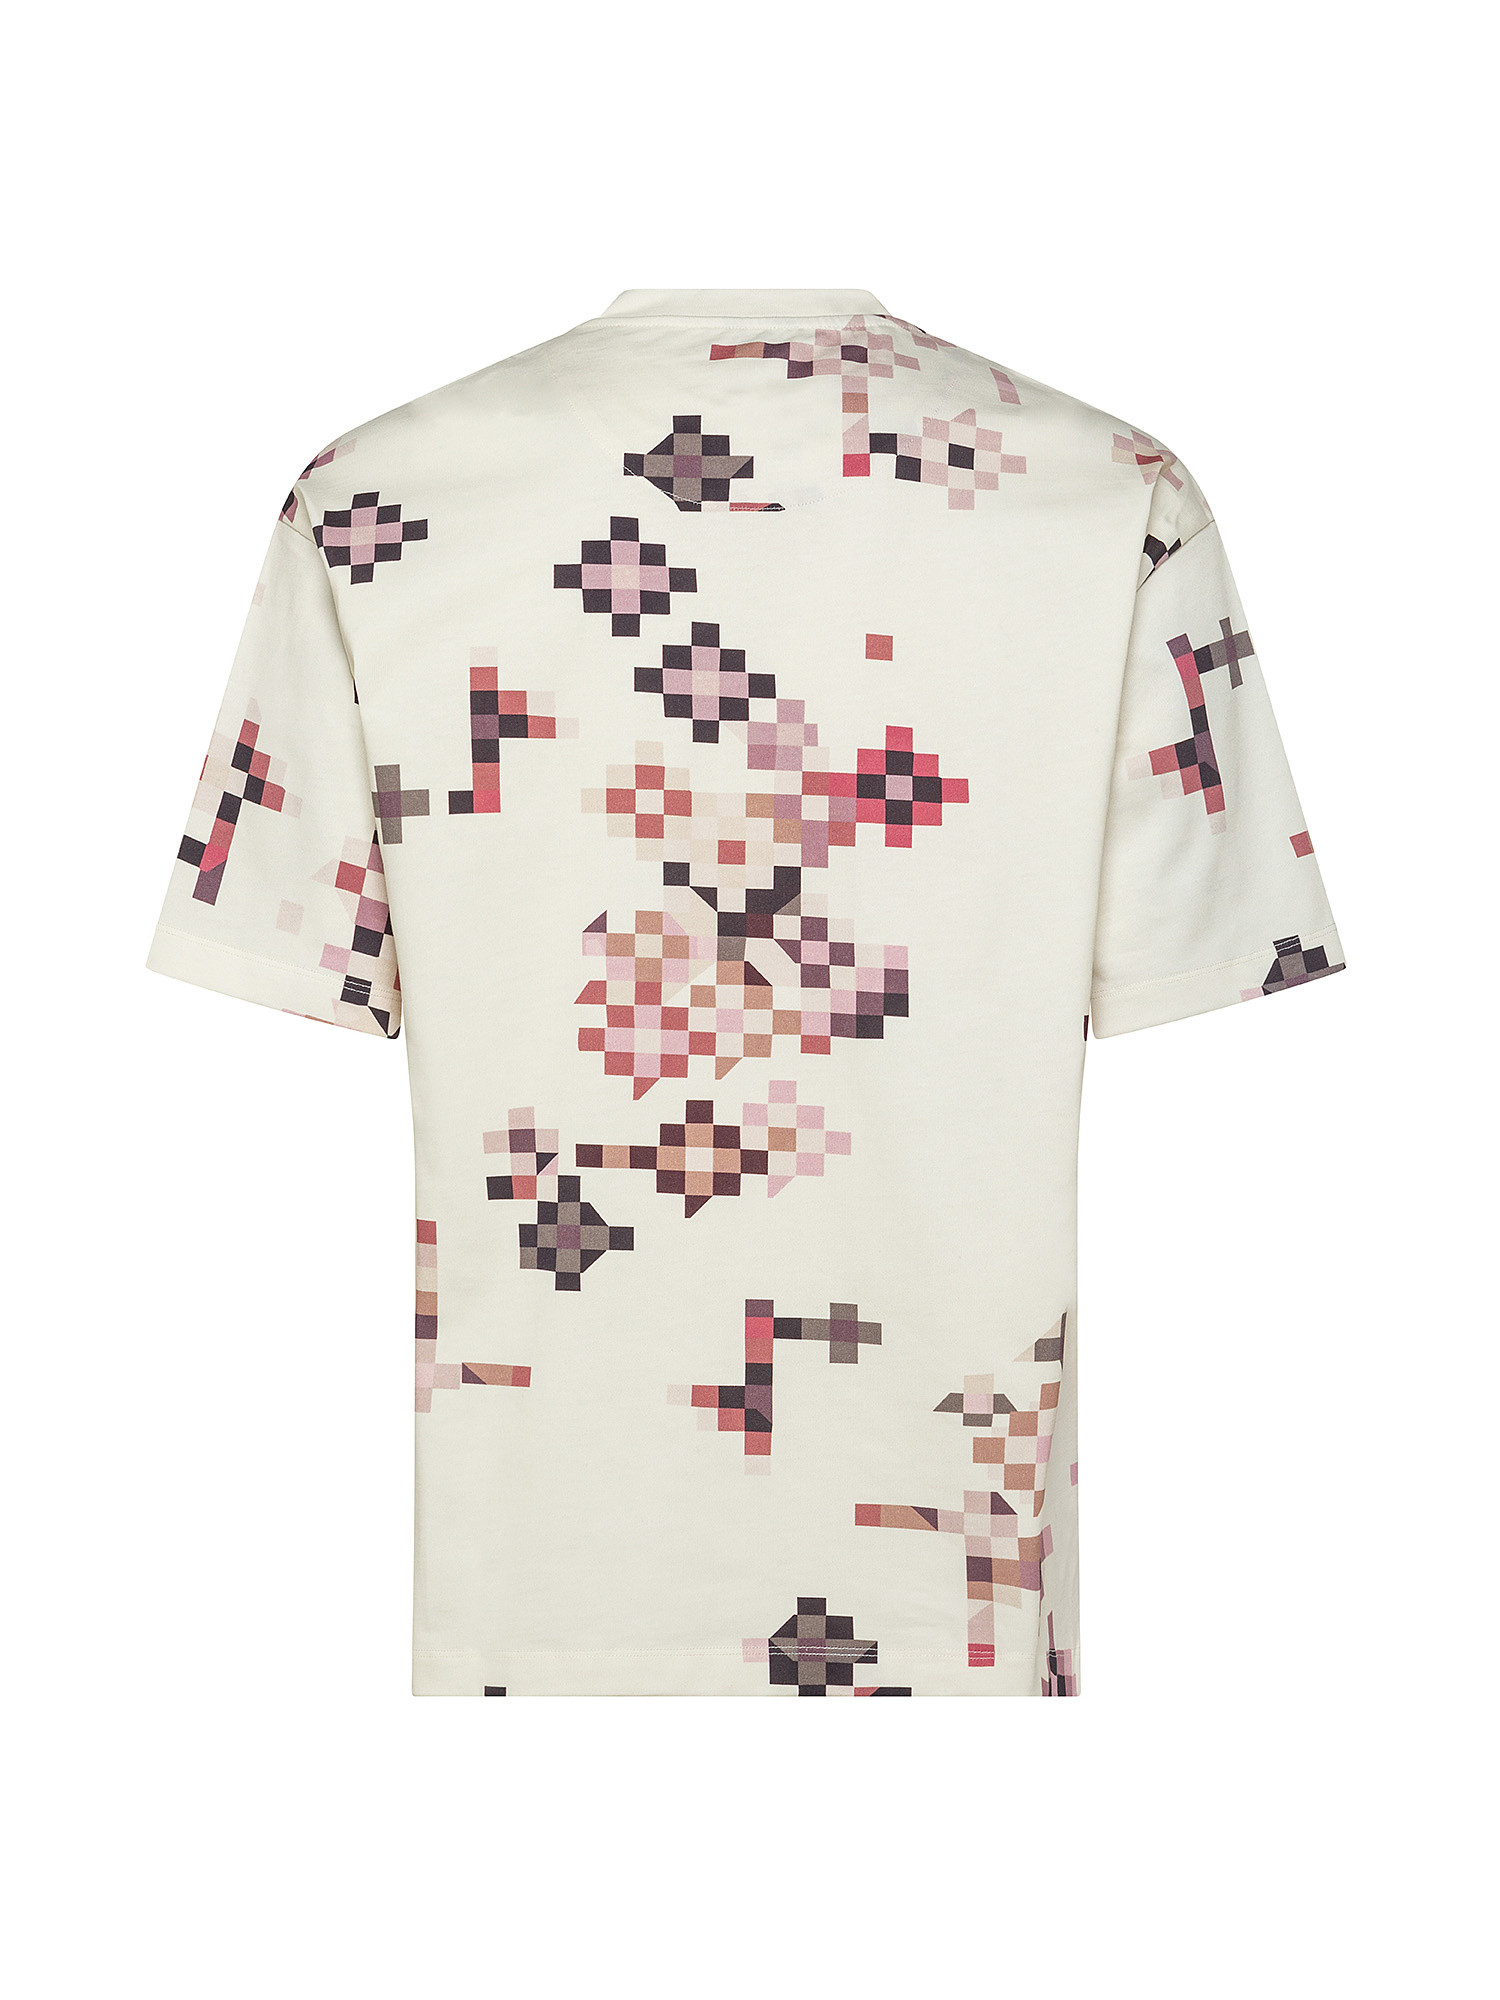 T-shirt con stampa pixel, Bianco panna, large image number 1